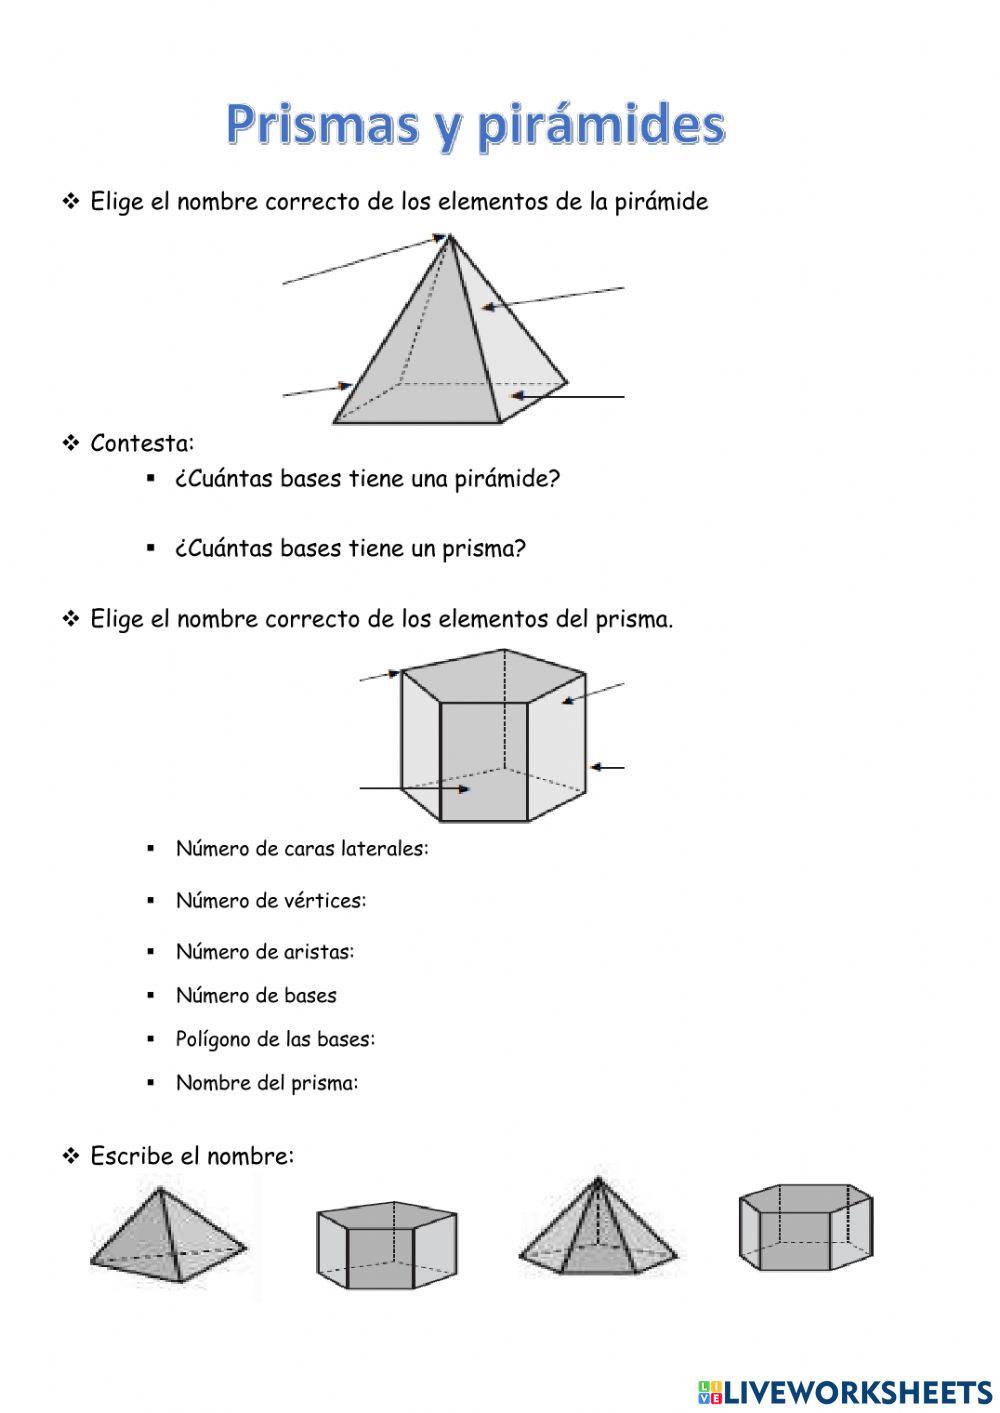 Elementos prismas y pirámides